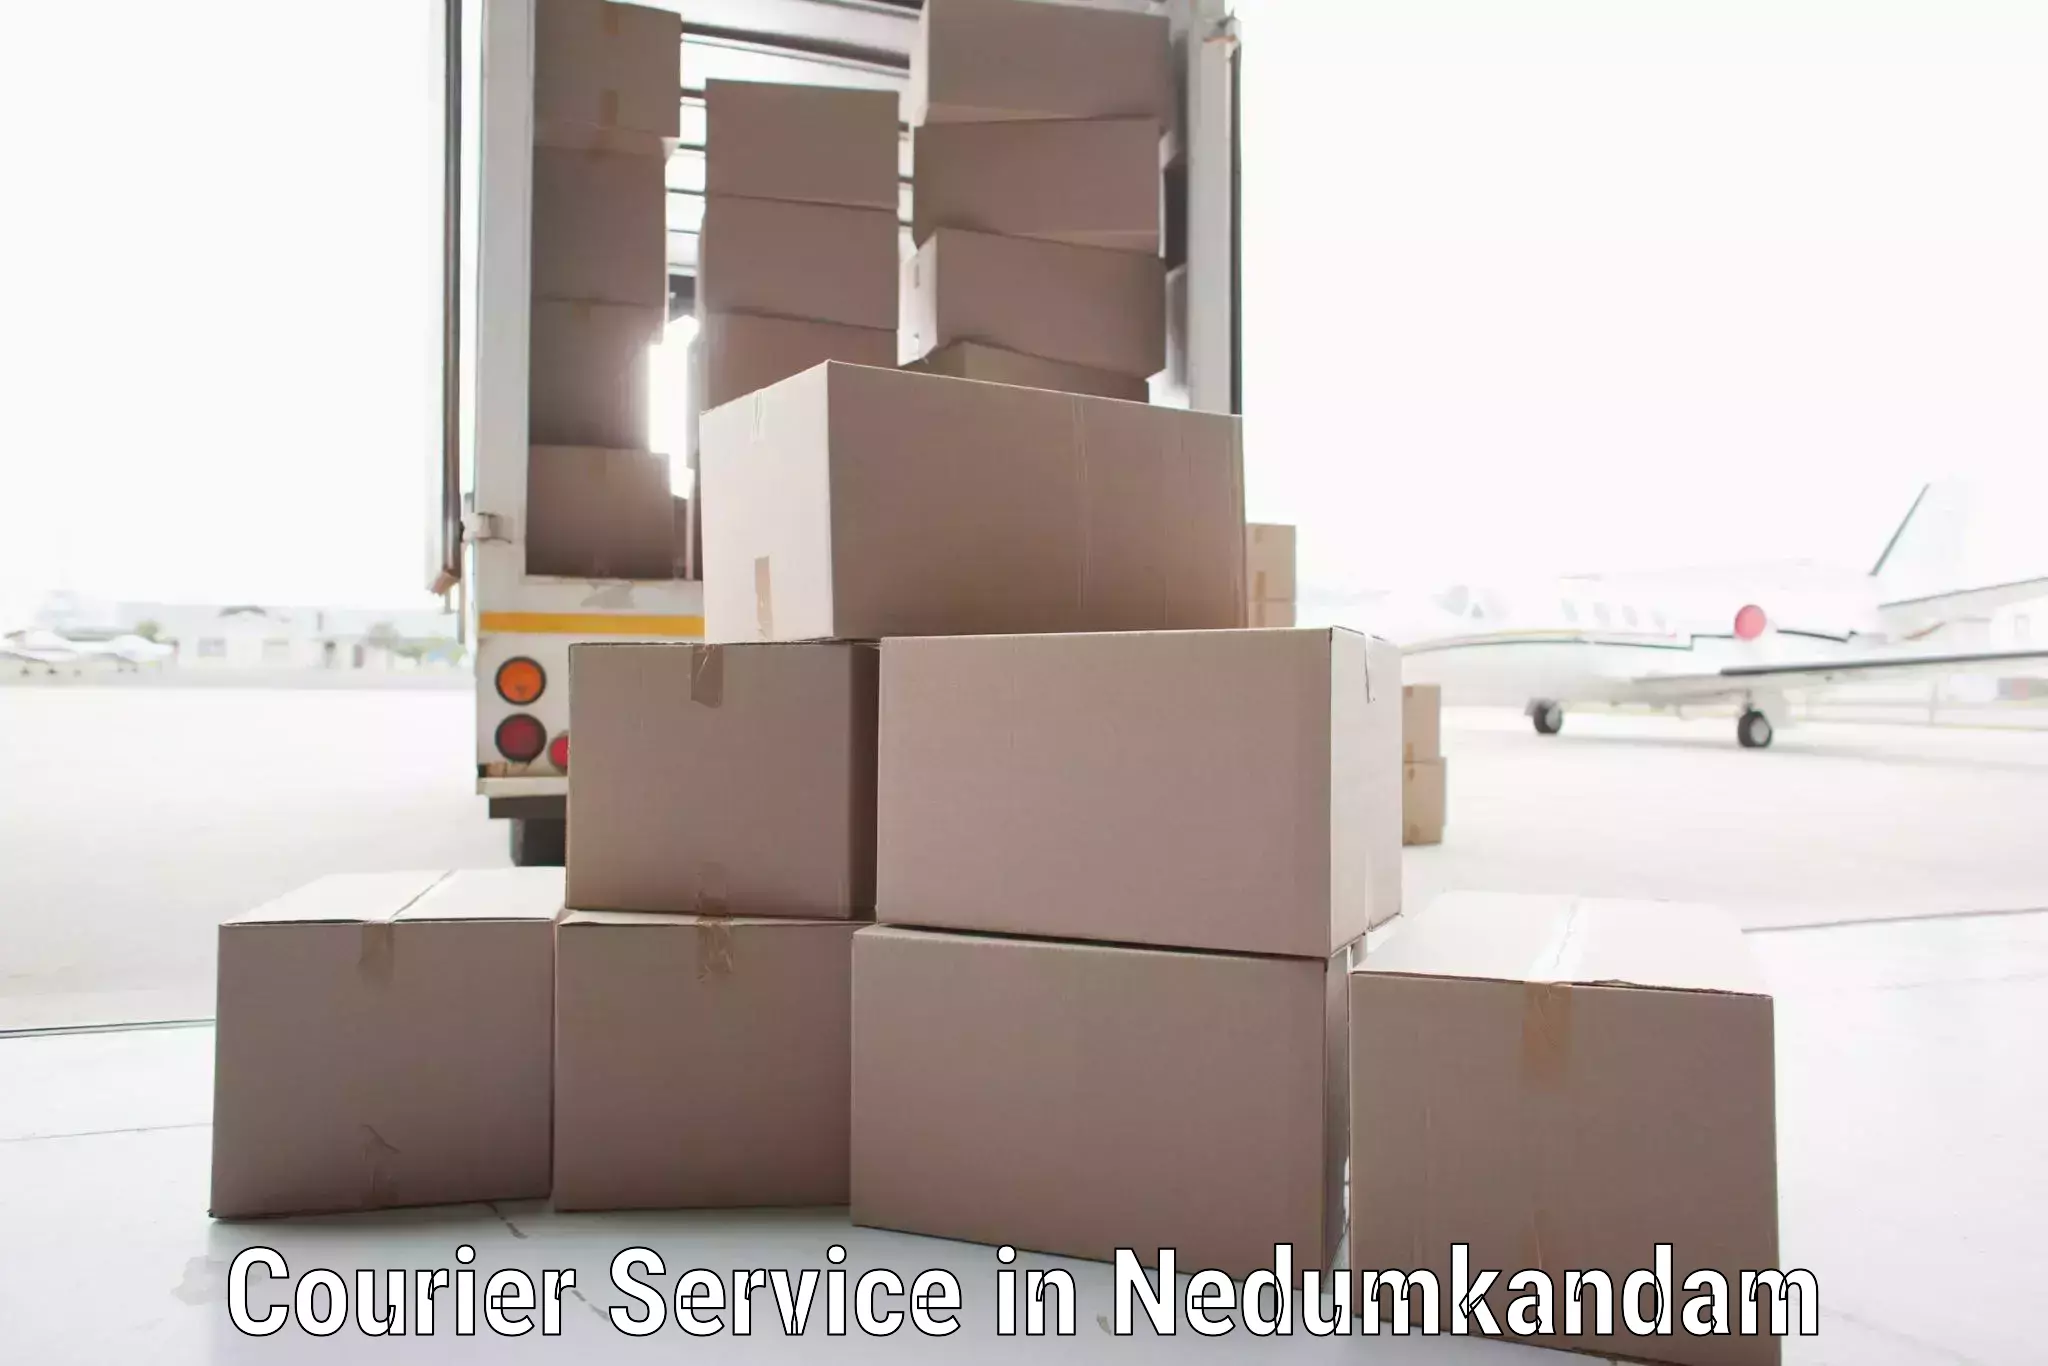 Efficient parcel service in Nedumkandam